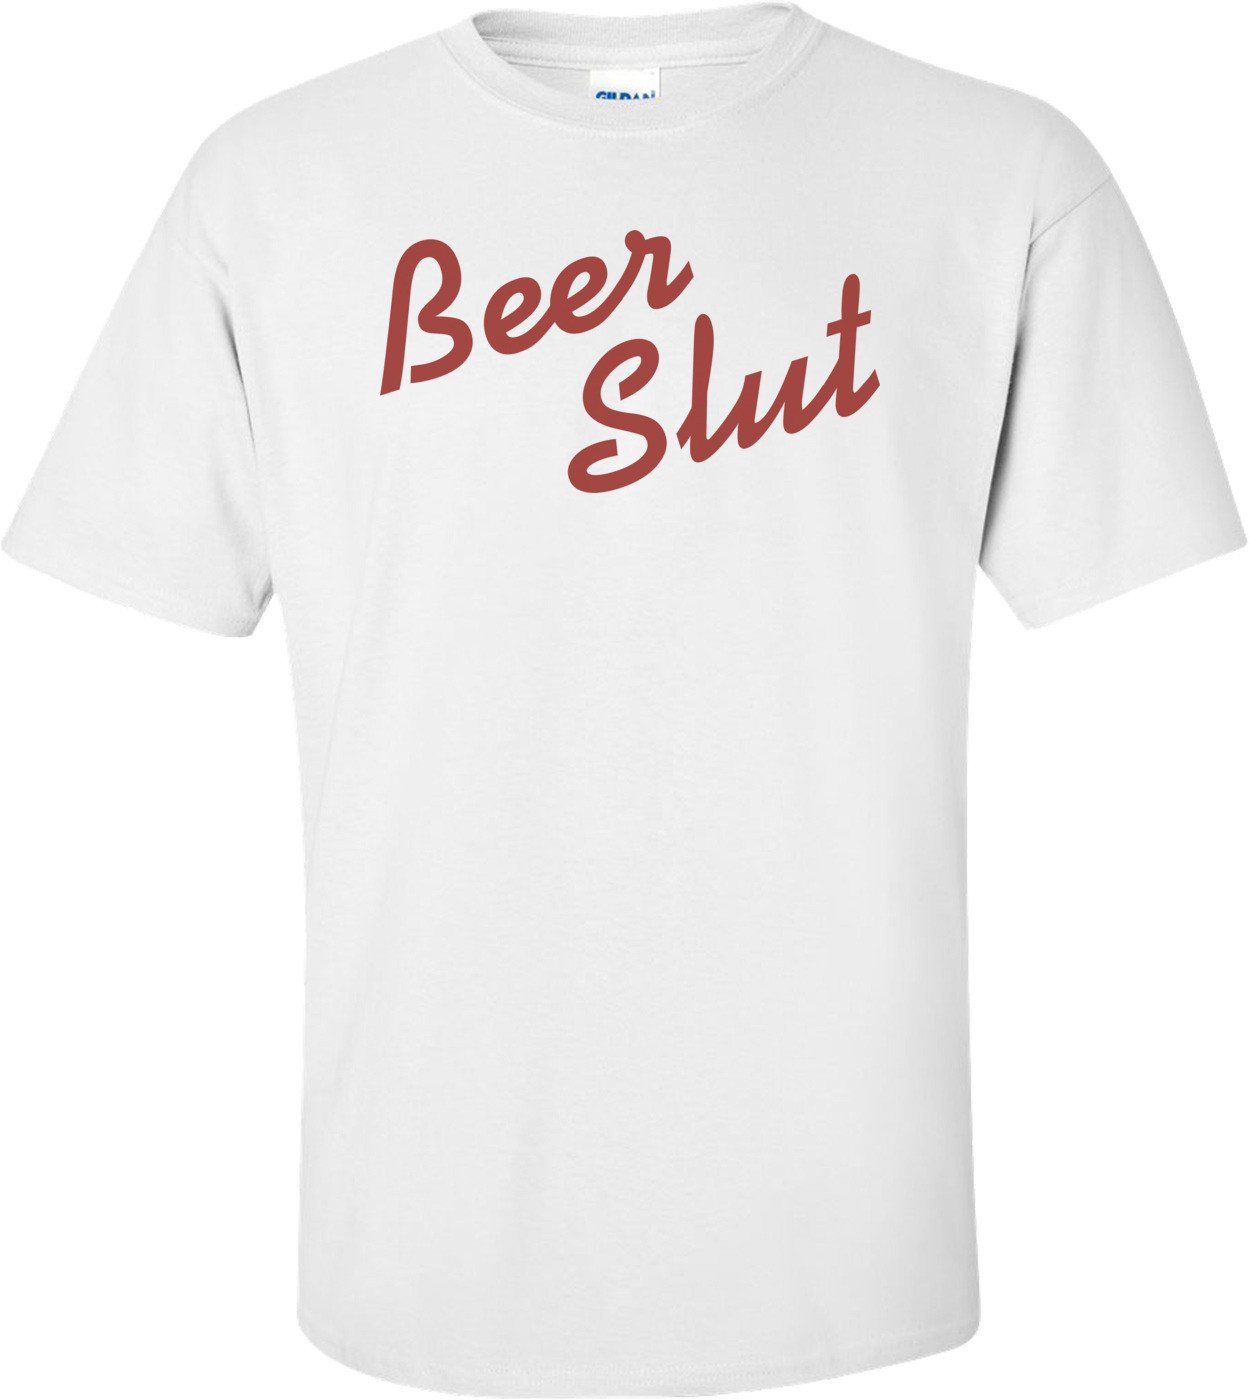 Beer Slut T-shirt